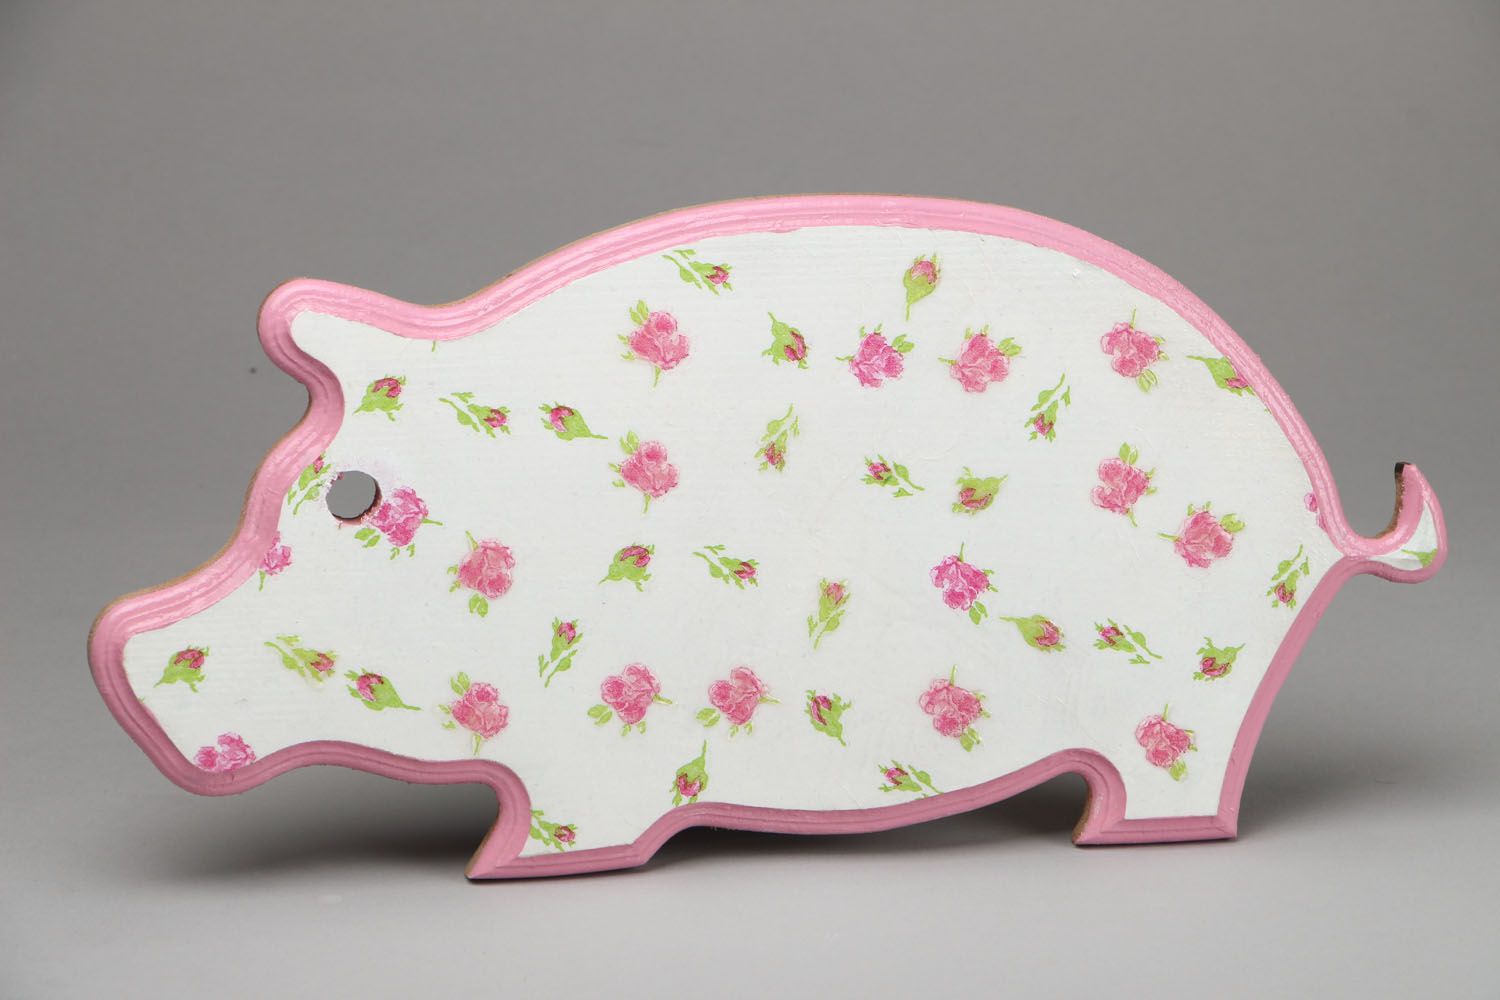 Tabla de cortar decorada en forma de un cerdo foto 1